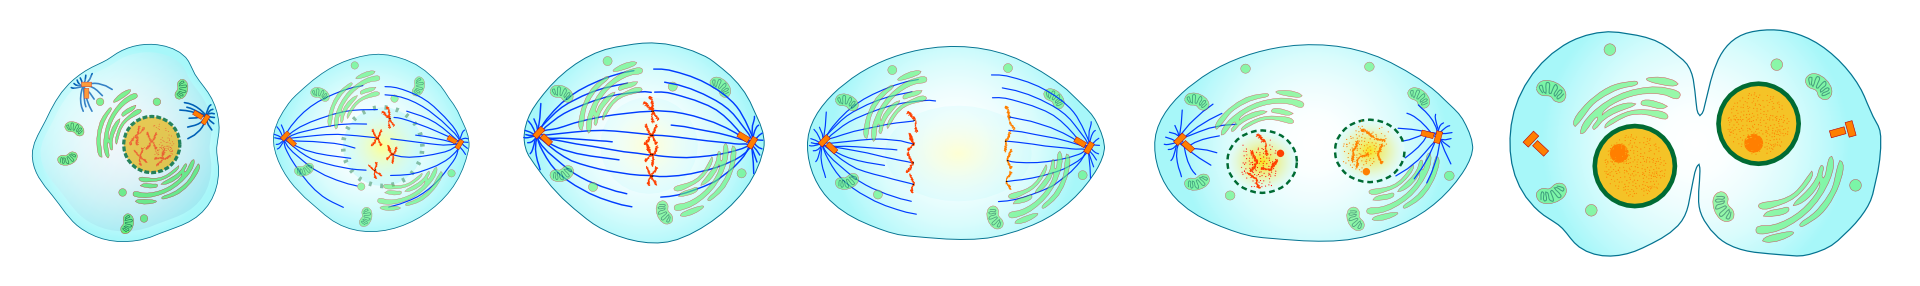 división celular